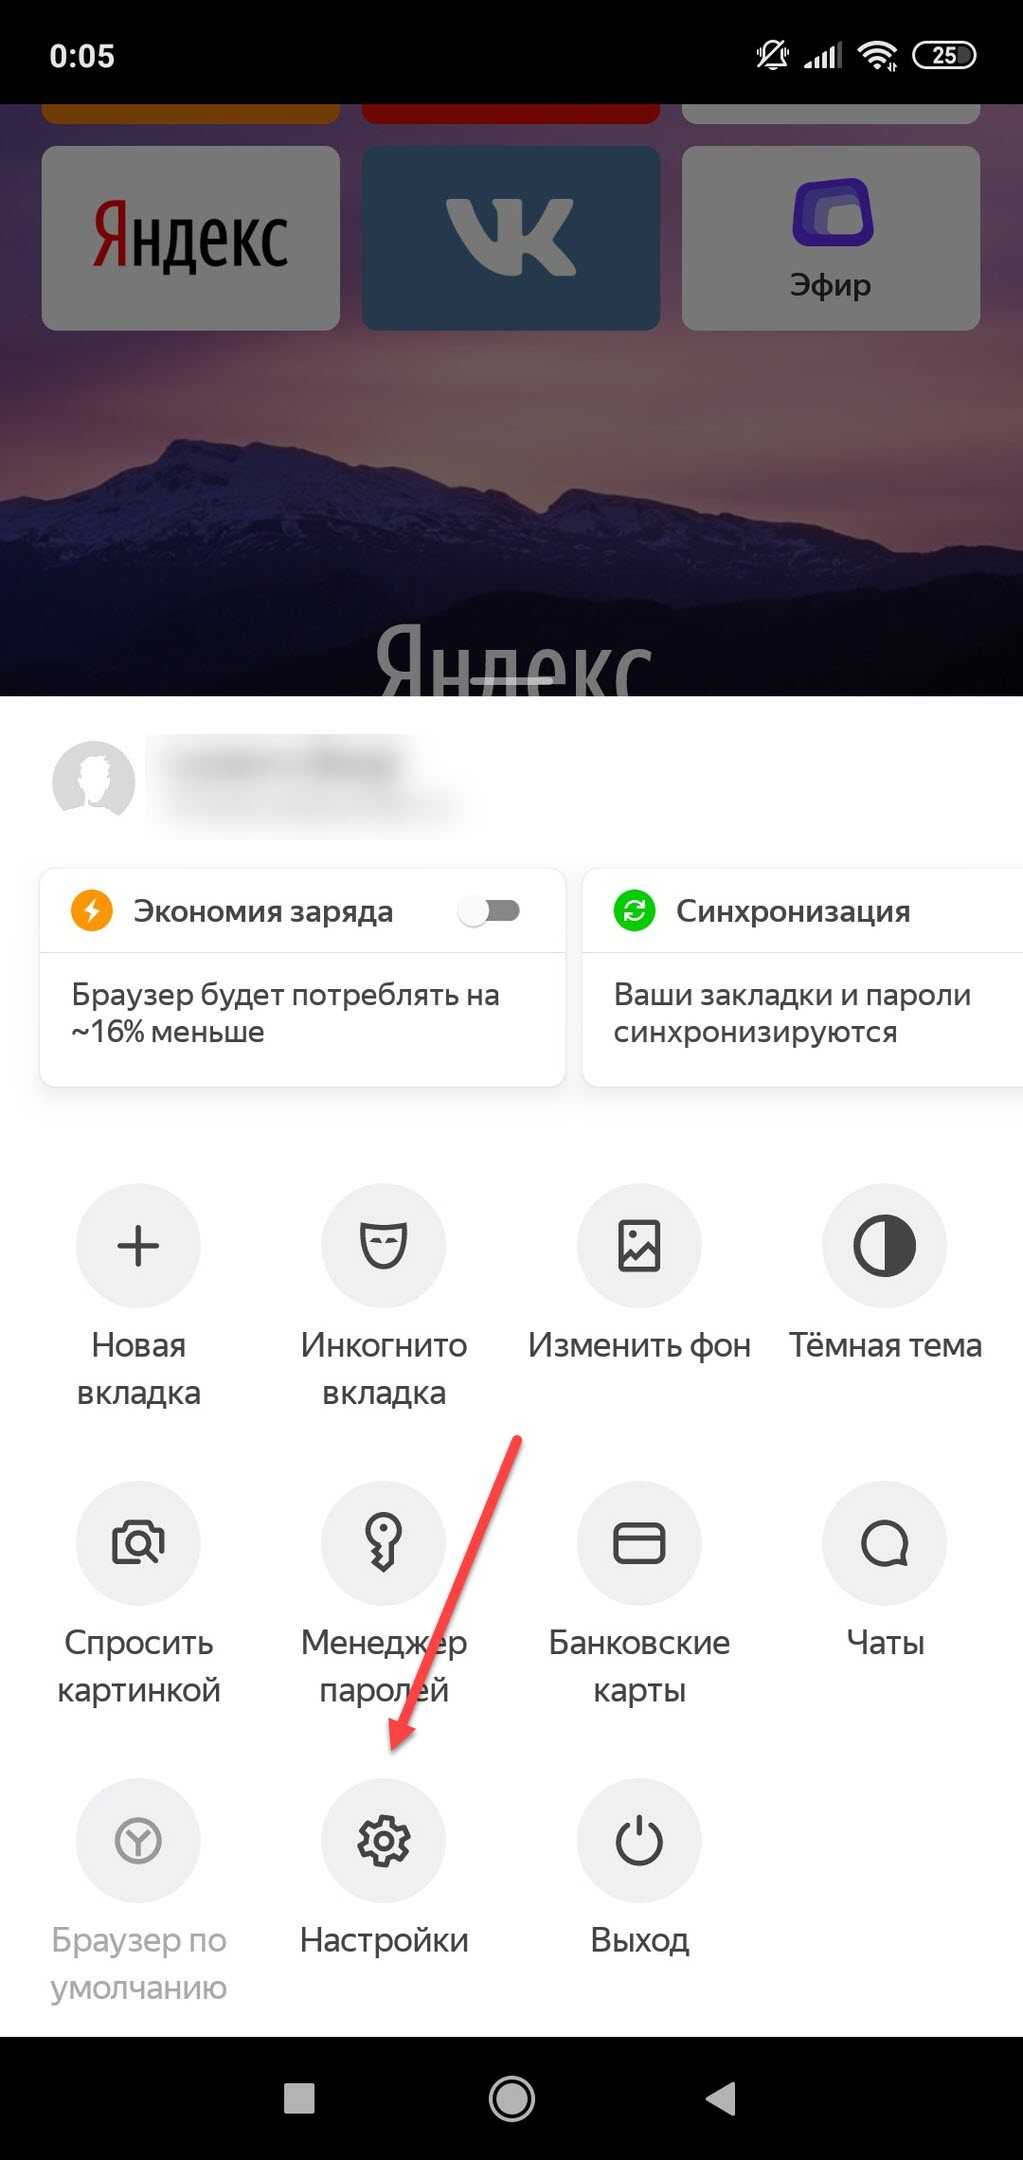 Как отключить историю в яндексе на телефоне. Очистить историю в Яндексе на телефоне. Как очистить историю в Яндексе на телефоне. История запросов в Яндексе на телефоне. Как удалить историю в Яндексе на телефоне.